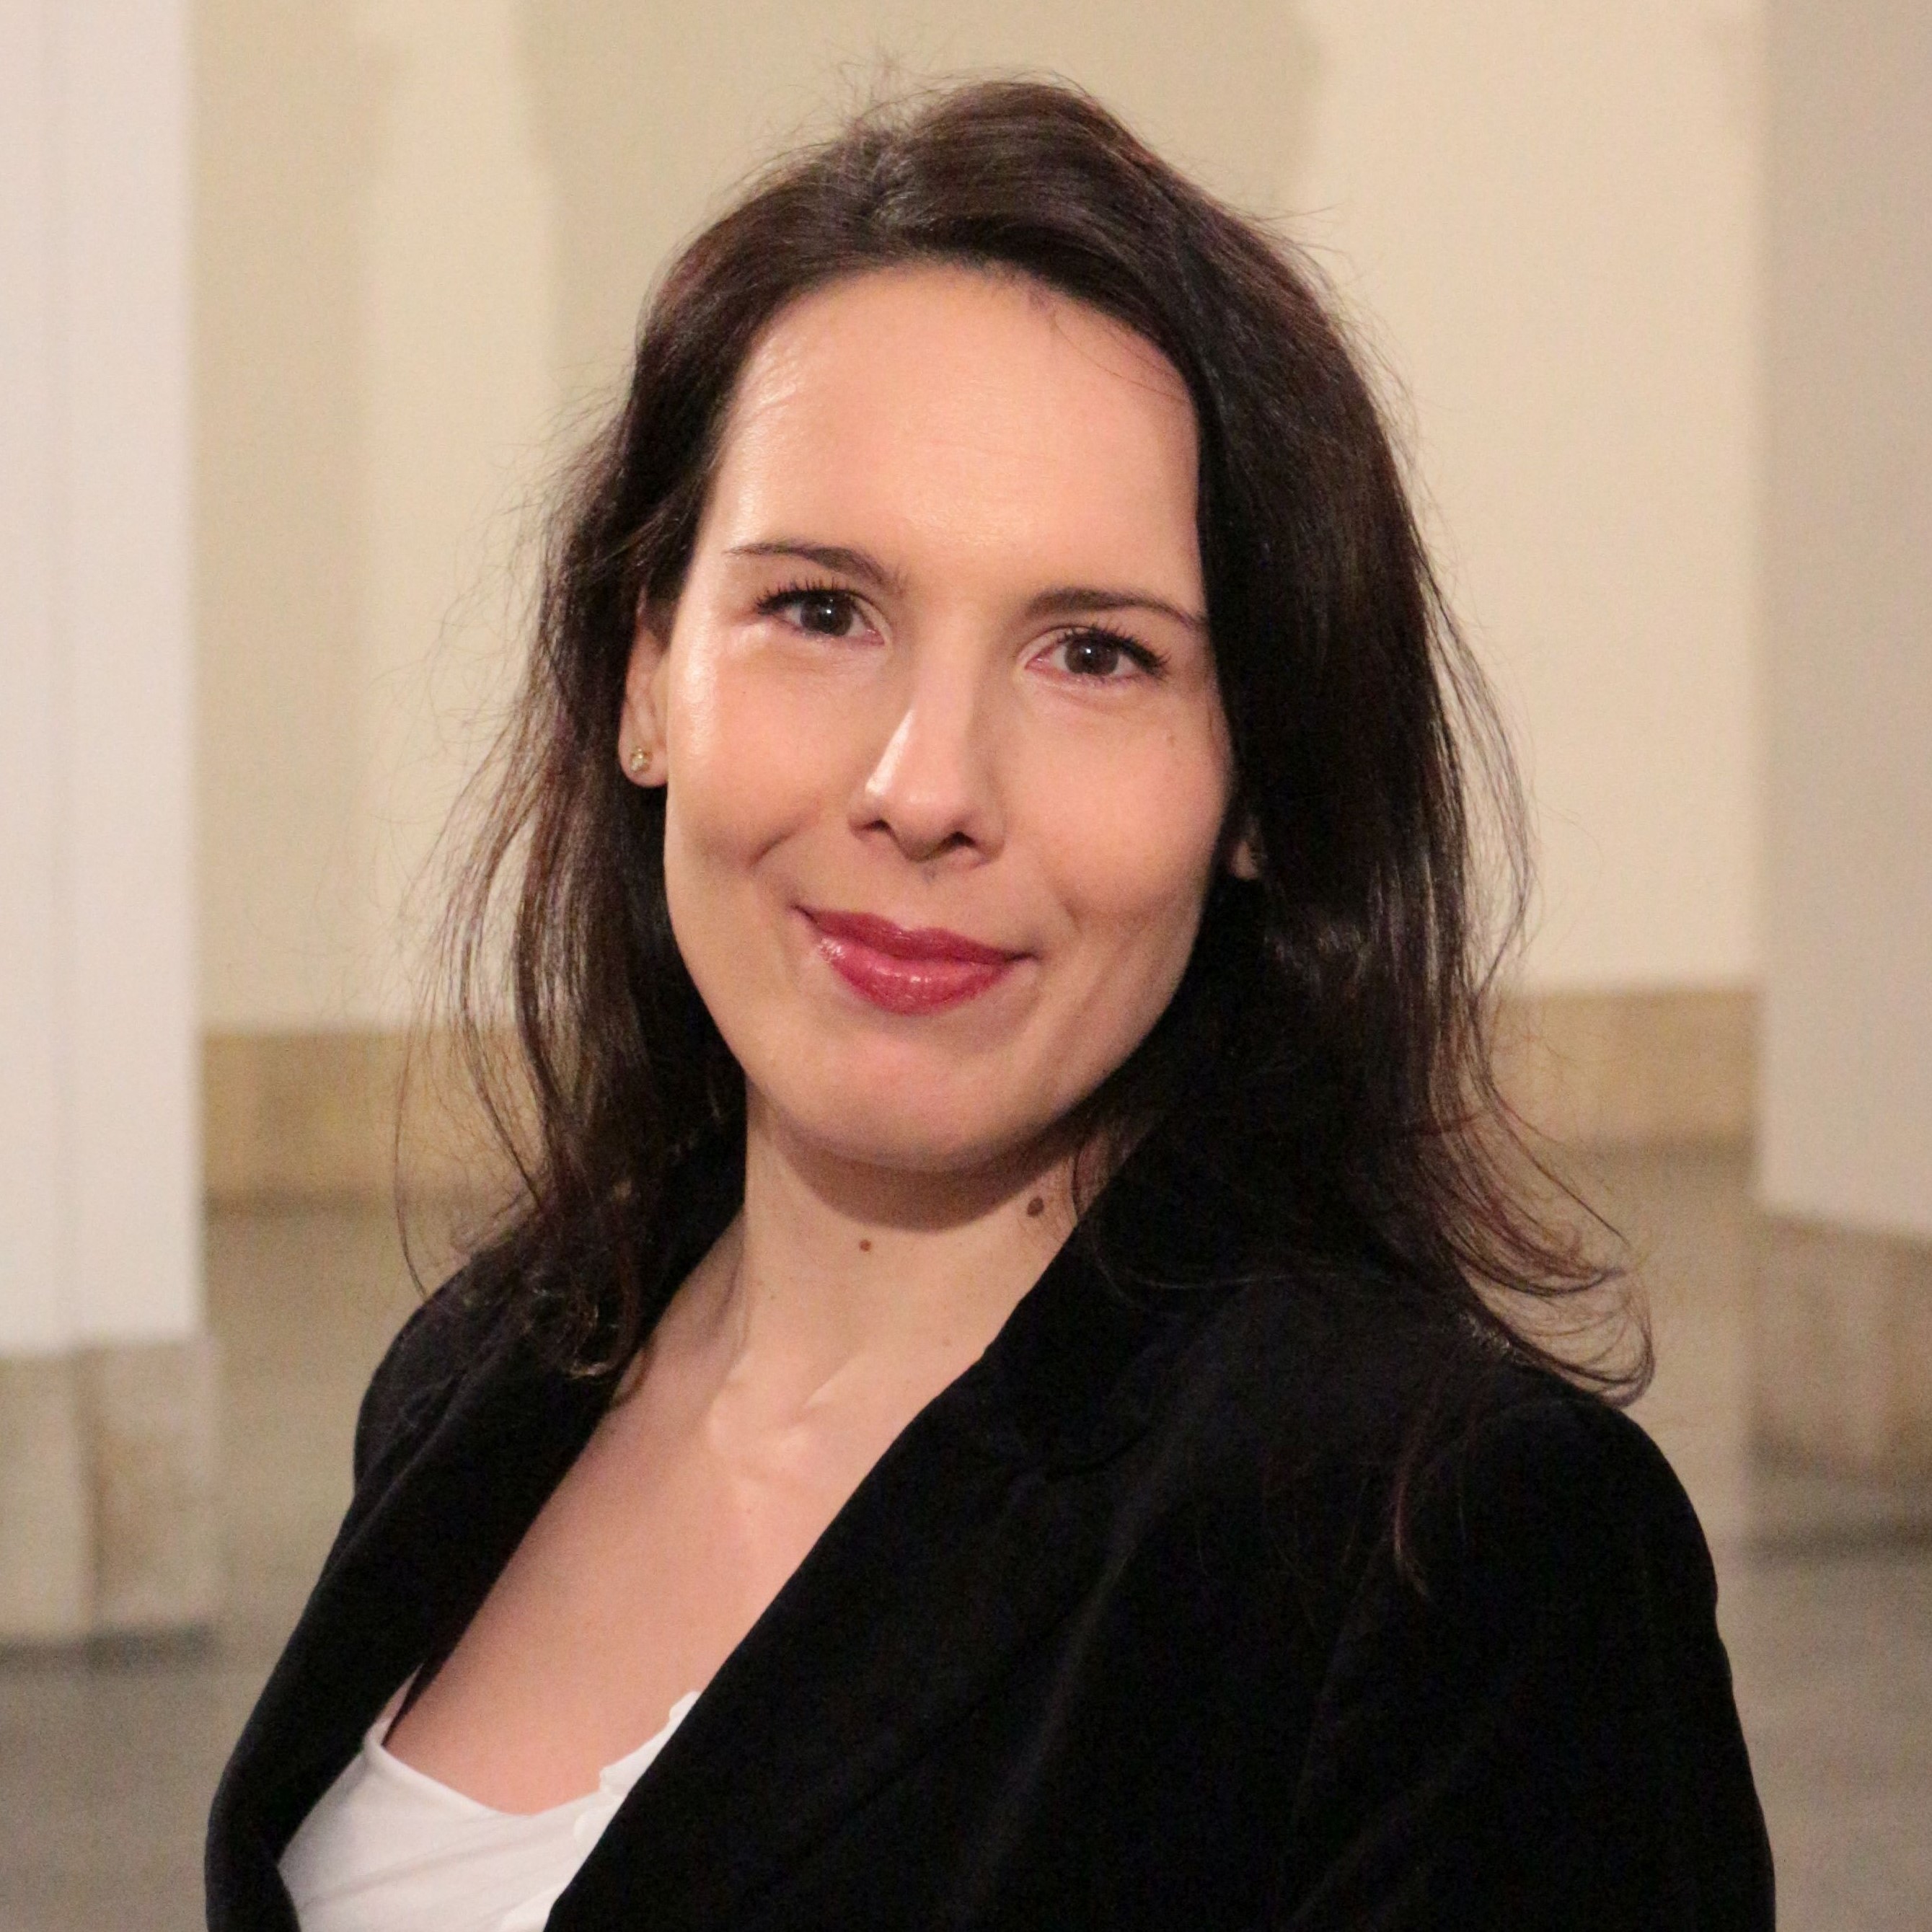 Małgorzata Zub (photo)